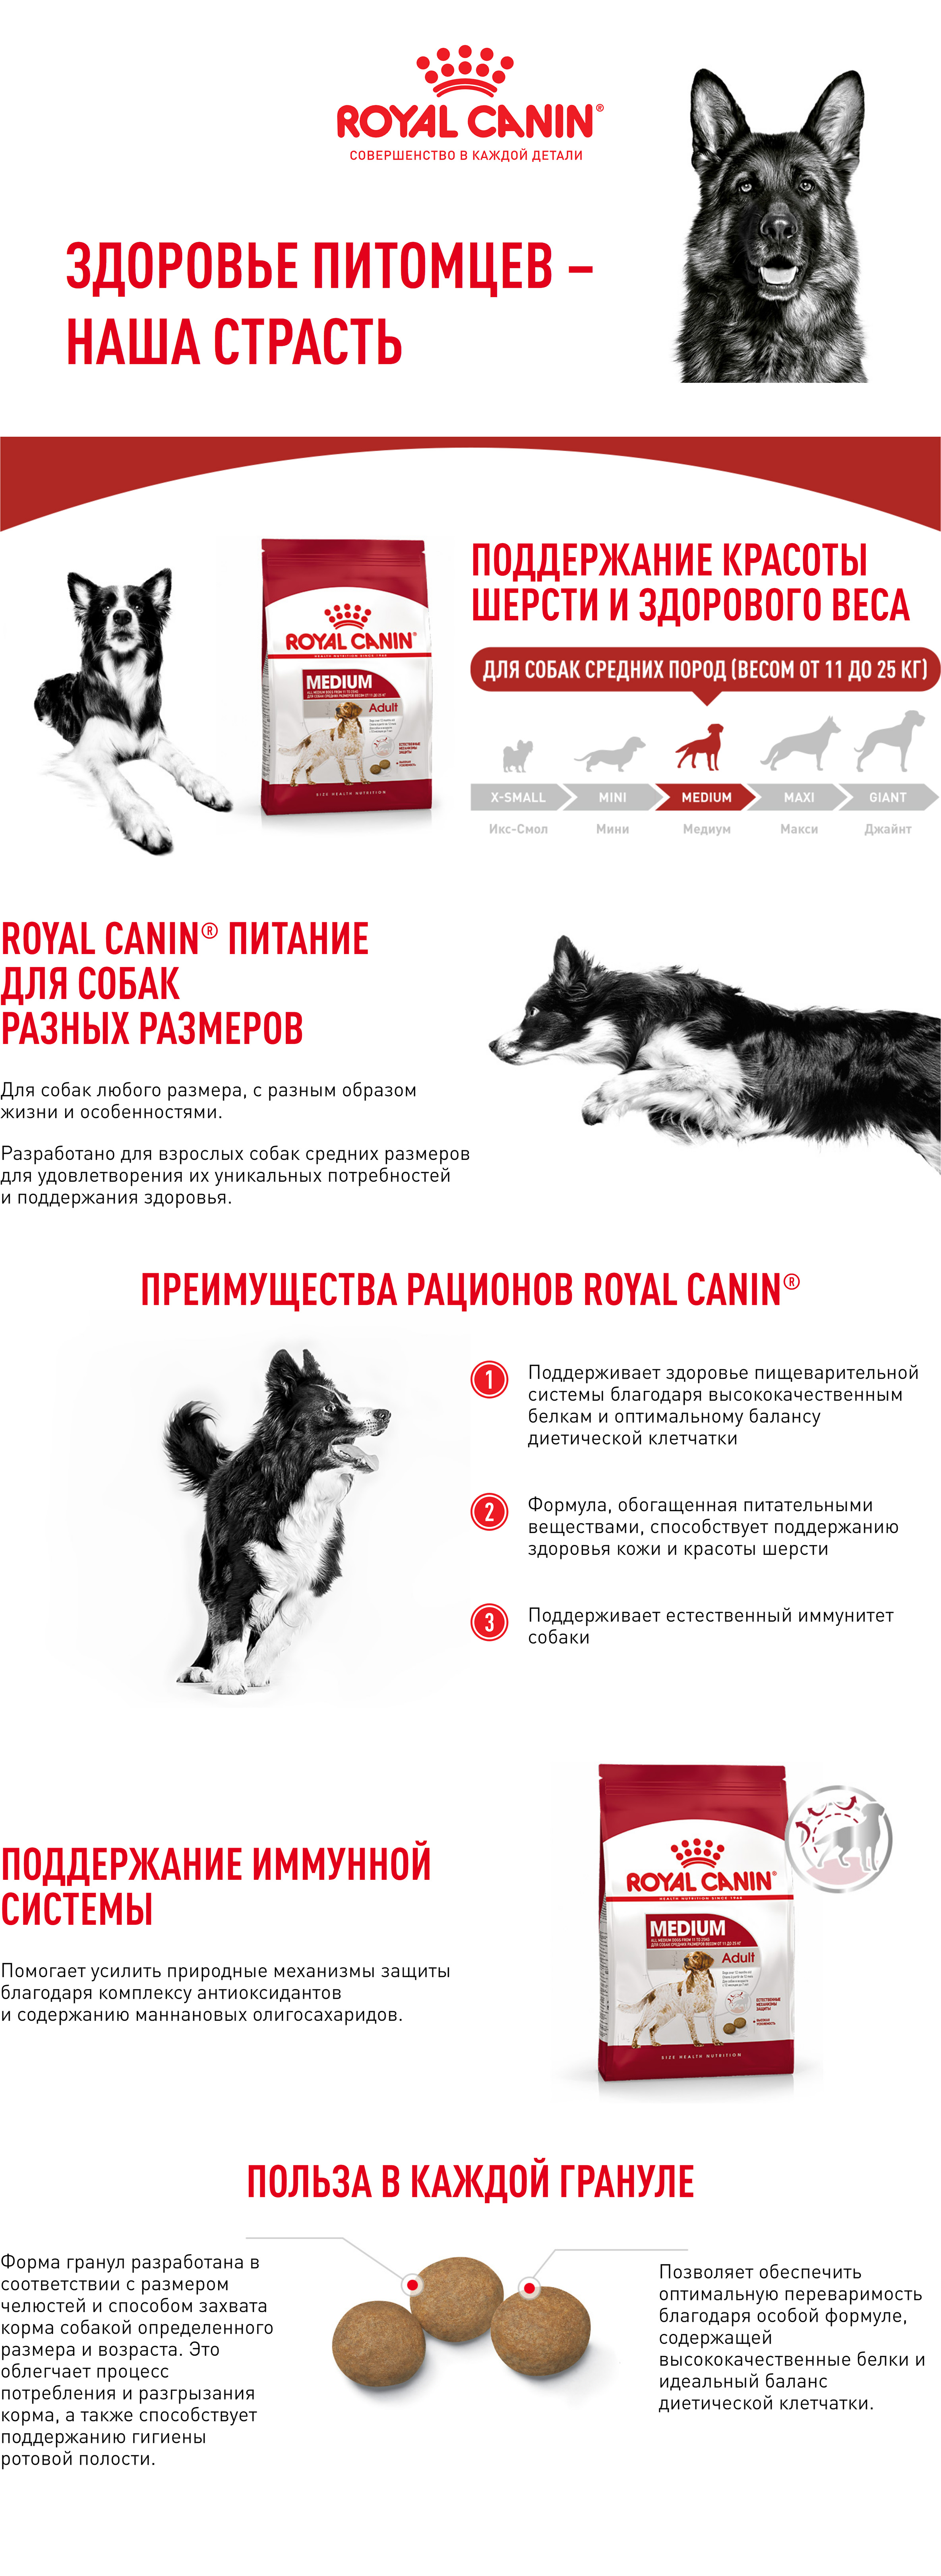 ROYAL CANIN MEDIUM ADULT корм для собак с 12 месяцев до 7 лет